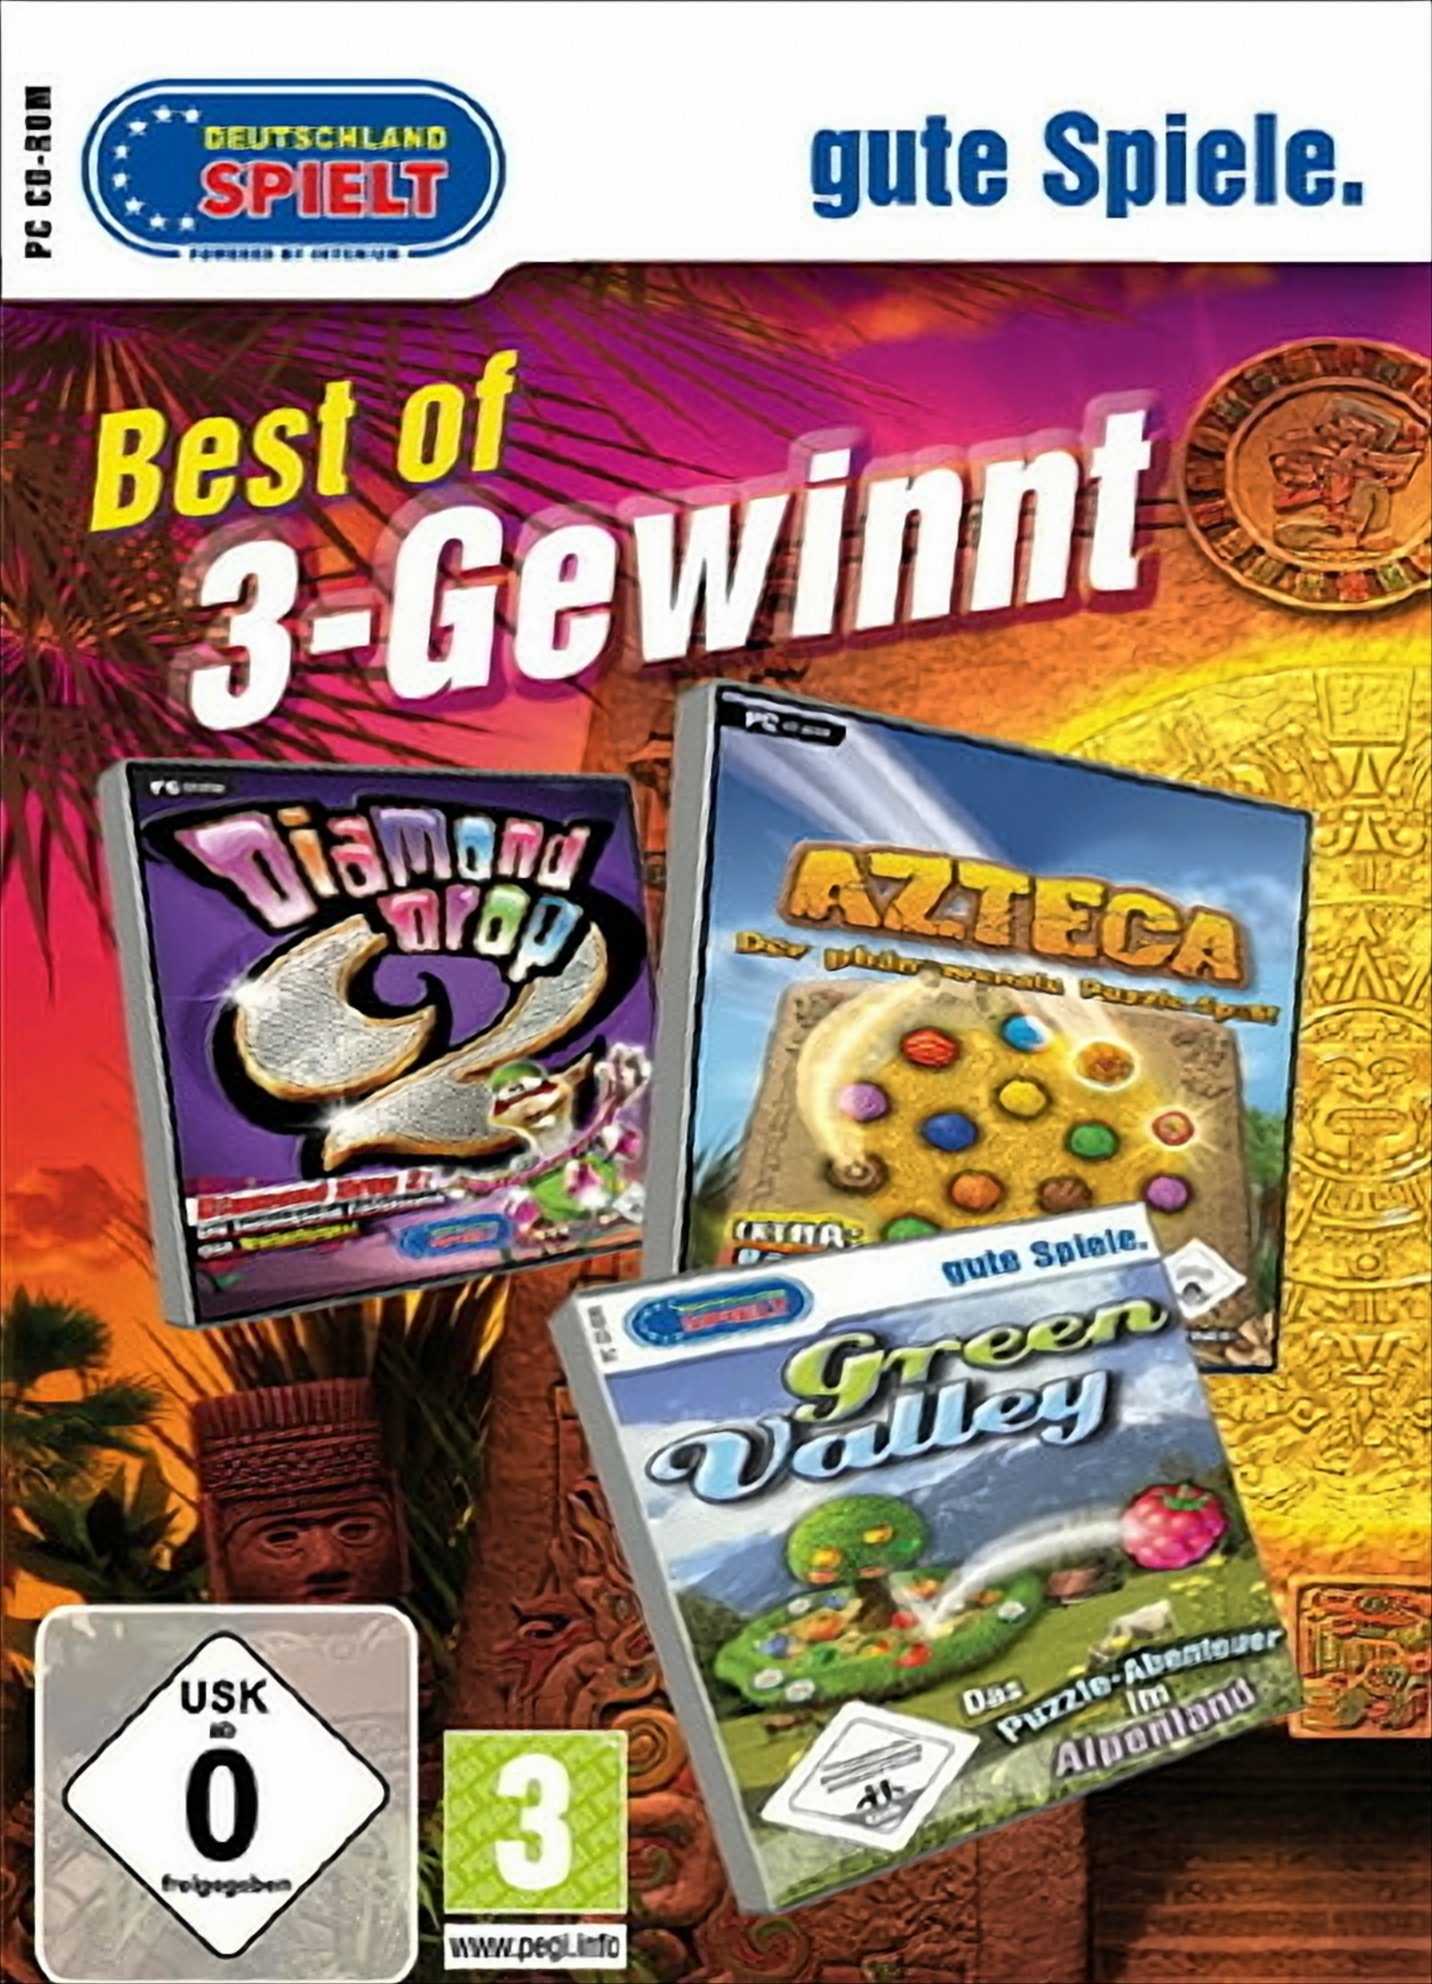 BEST OF 3-Gewinnt PC